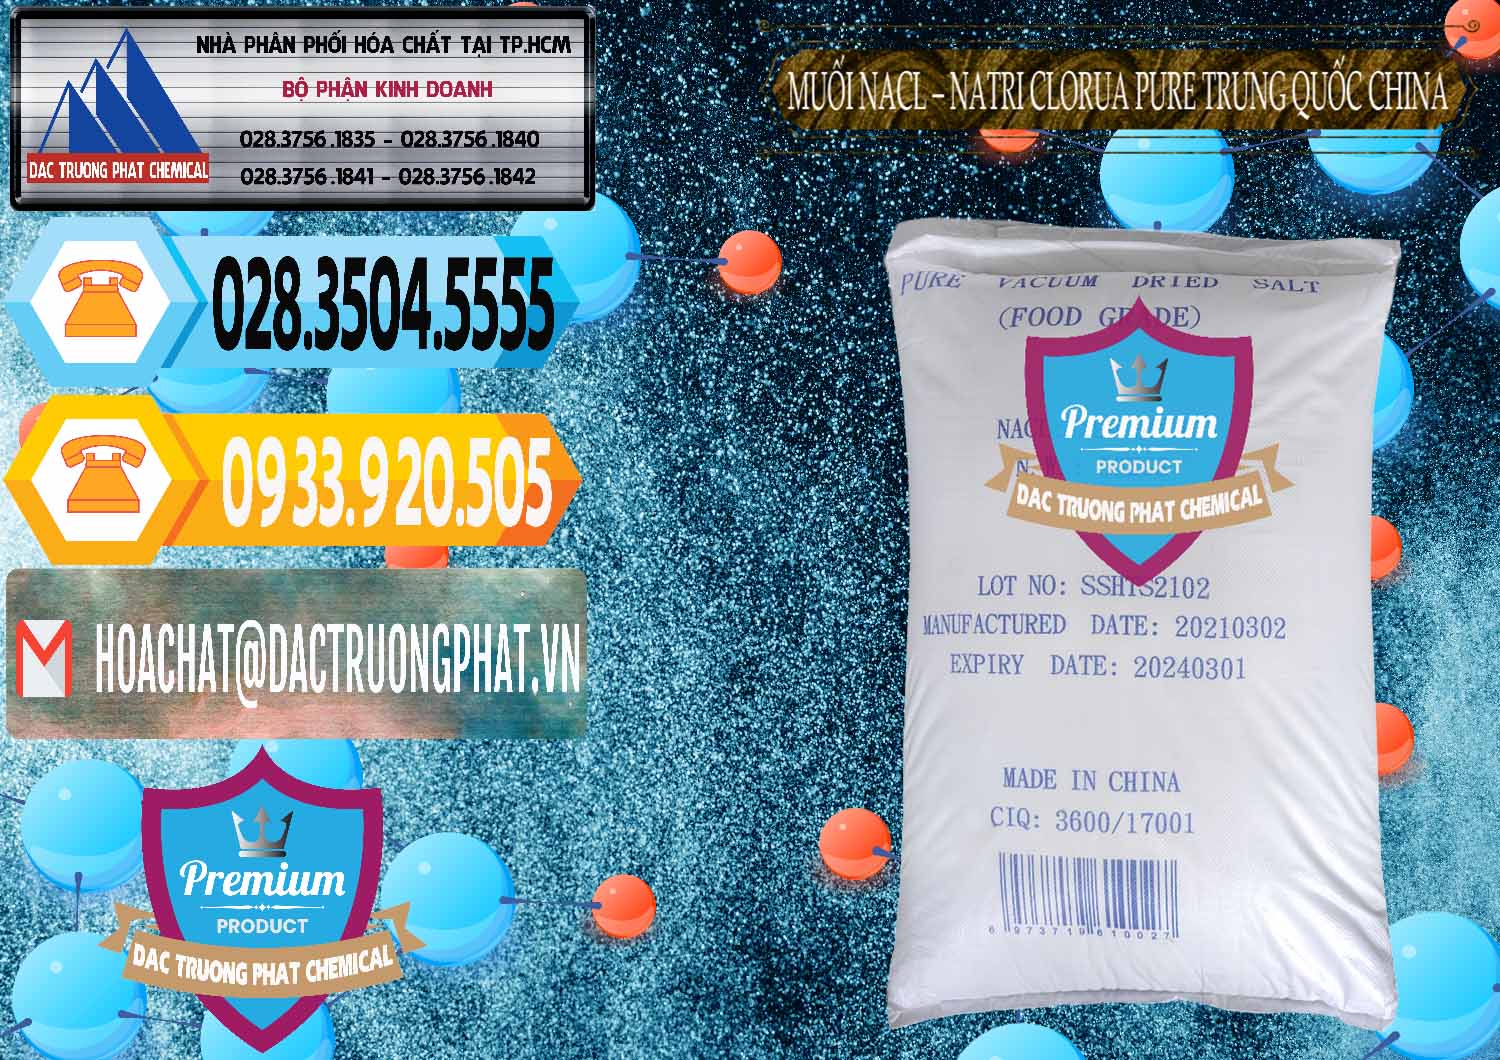 Chuyên kinh doanh ( bán ) Muối NaCL – Sodium Chloride Pure Trung Quốc China - 0230 - Cty chuyên bán - cung cấp hóa chất tại TP.HCM - hoachattayrua.net